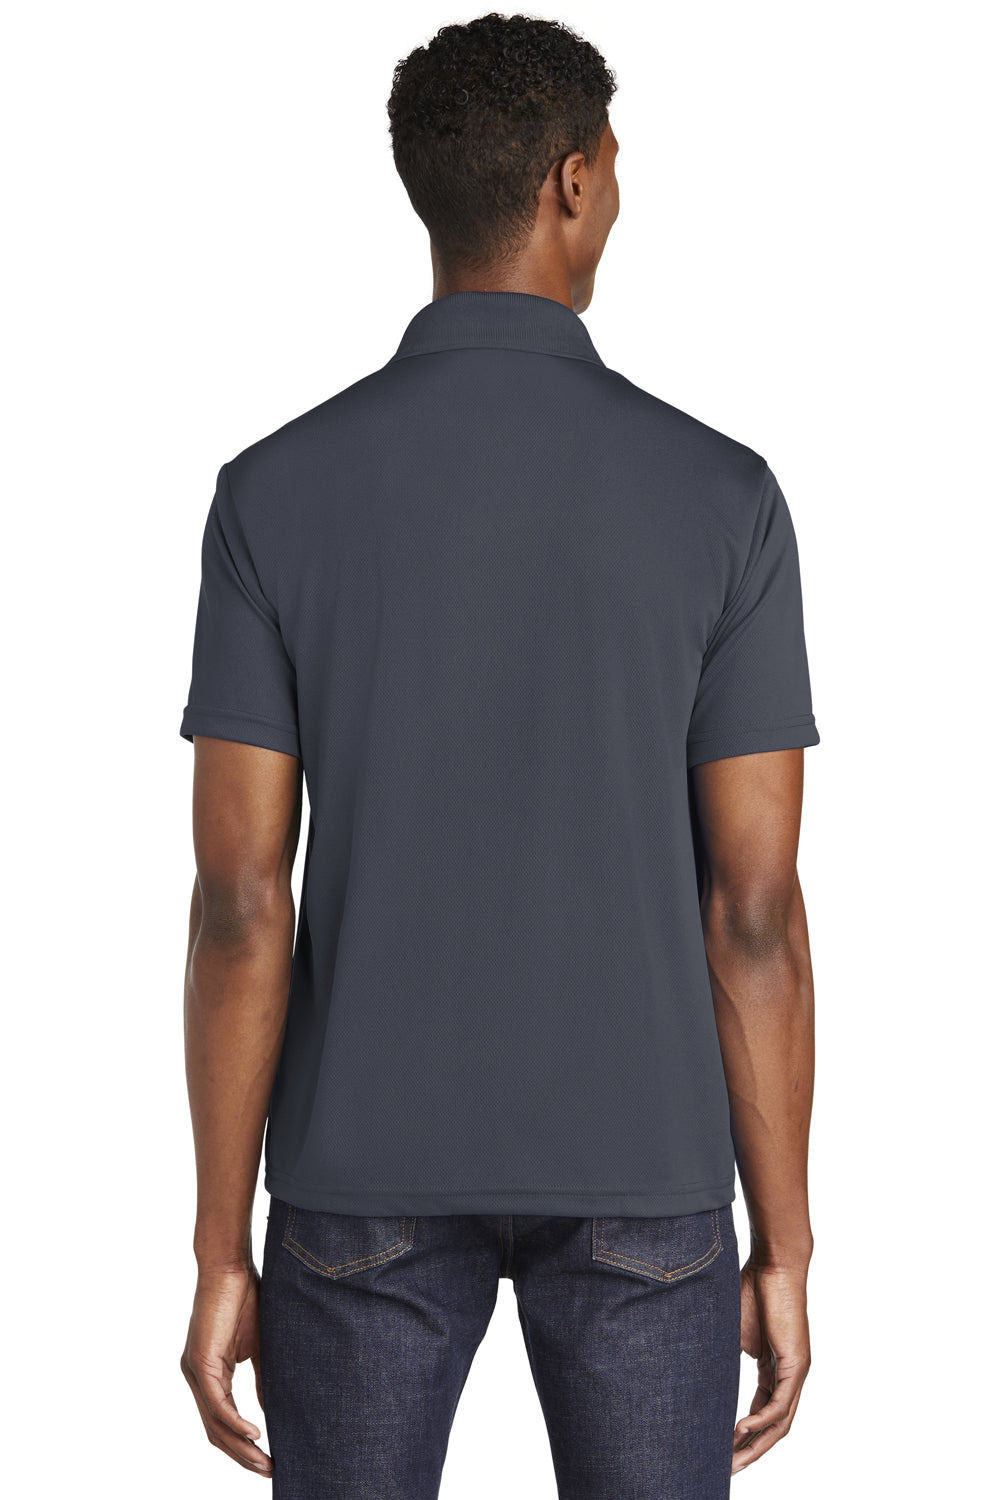 Sport-Tek ST640 Mens RacerMesh Moisture Wicking Short Sleeve Polo Shirt Graphite Grey Back